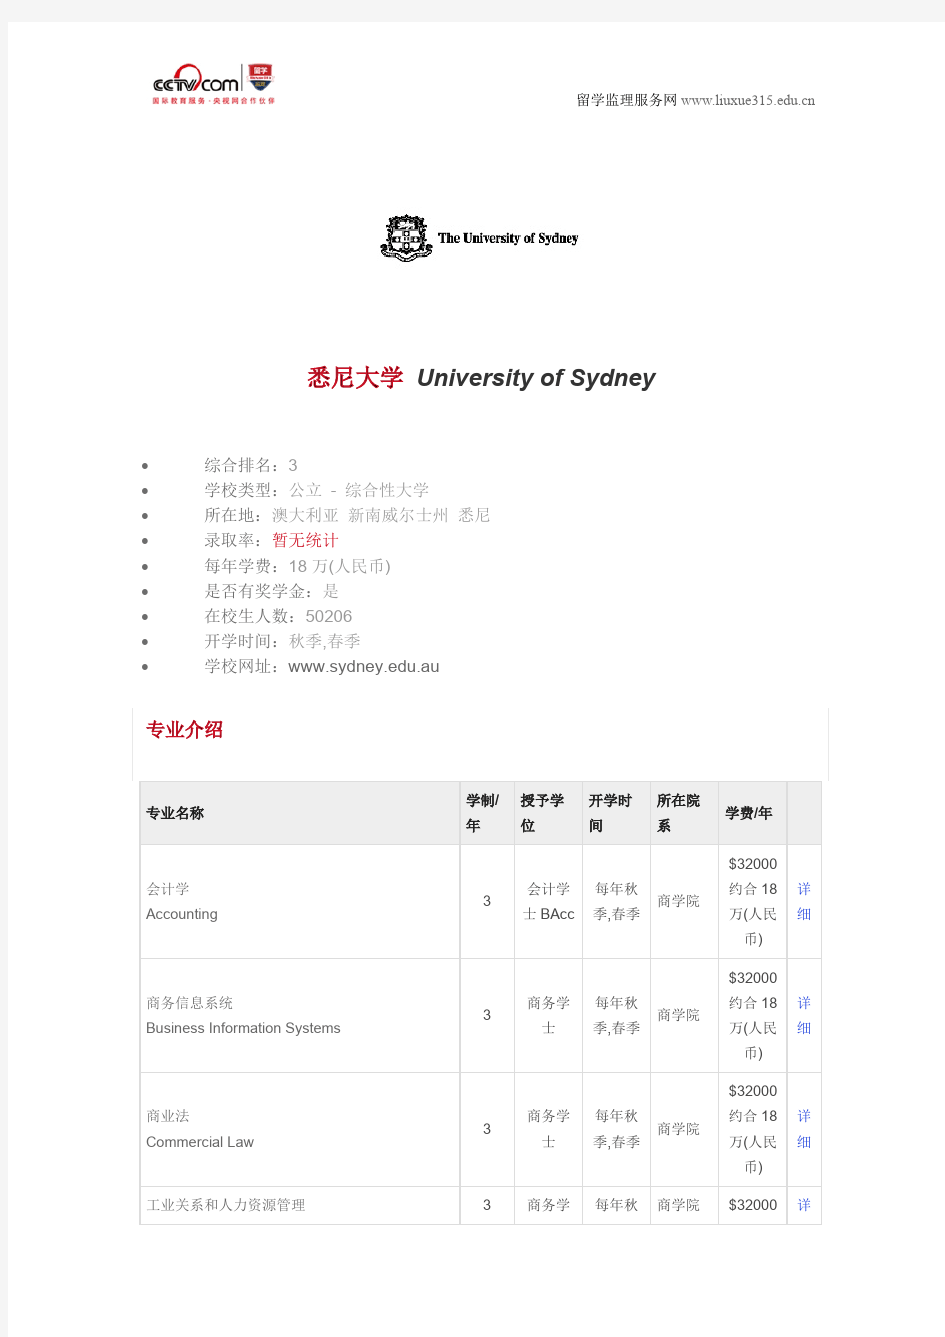 悉尼大学专业列表